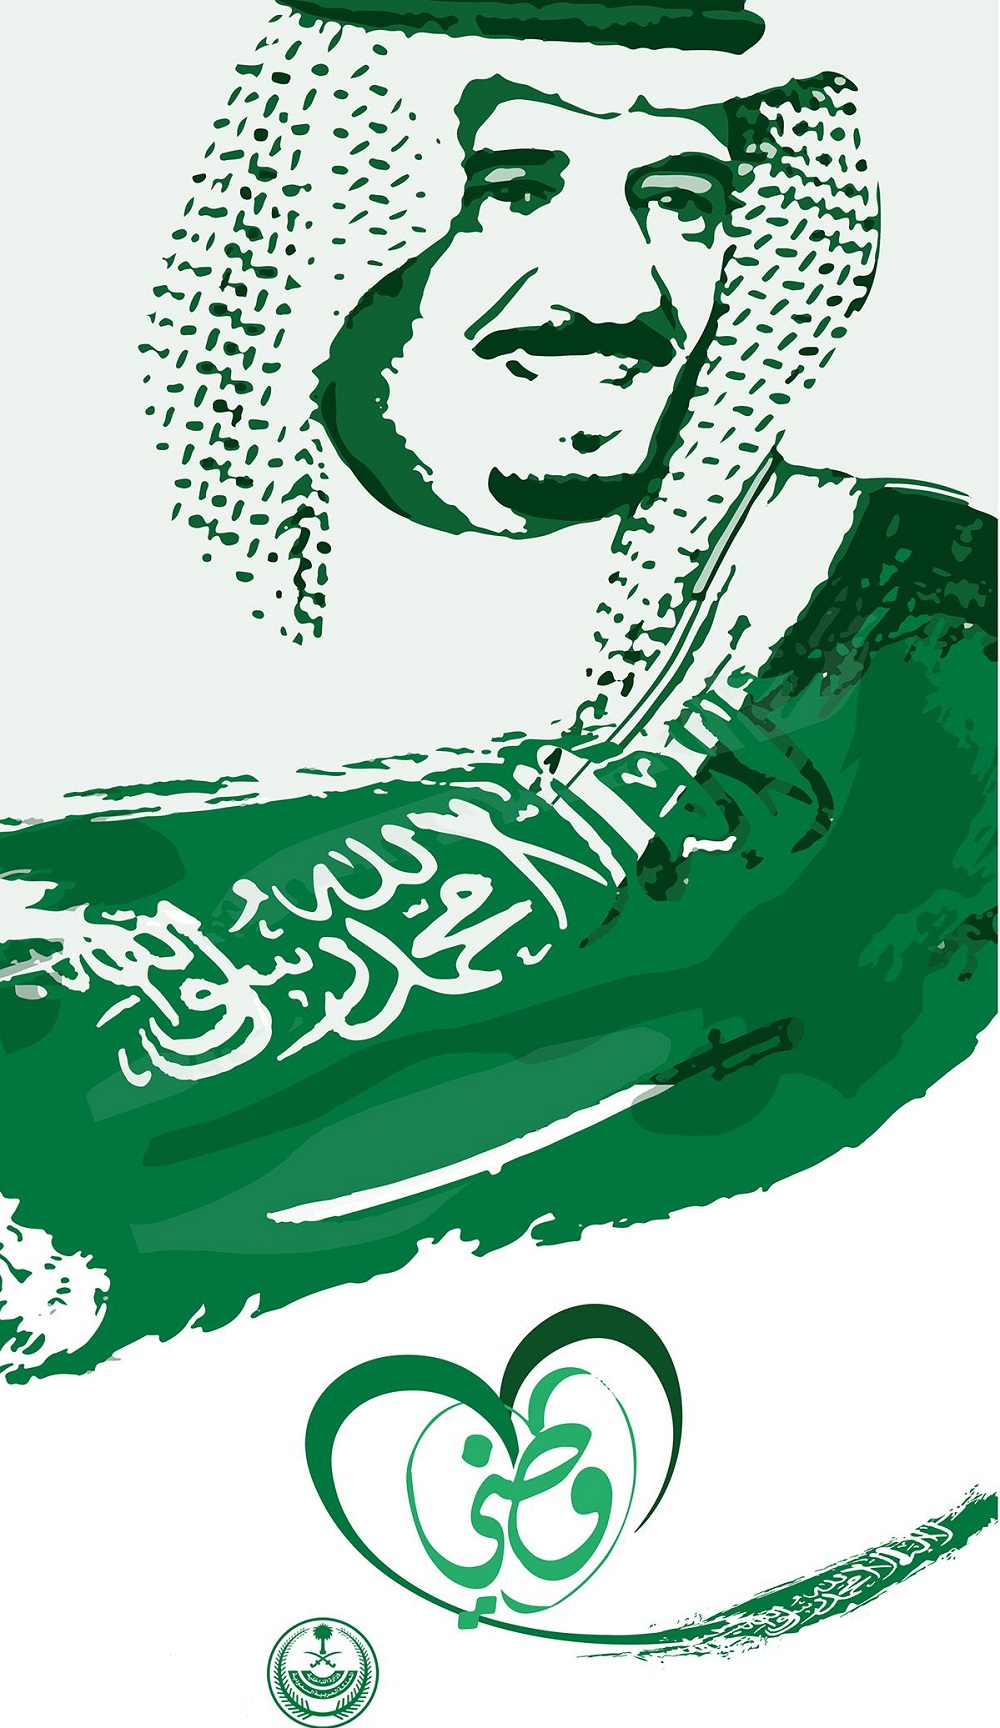 عبارات وصور عن اليوم الوطني السعودي 1442 مجلة رجيم